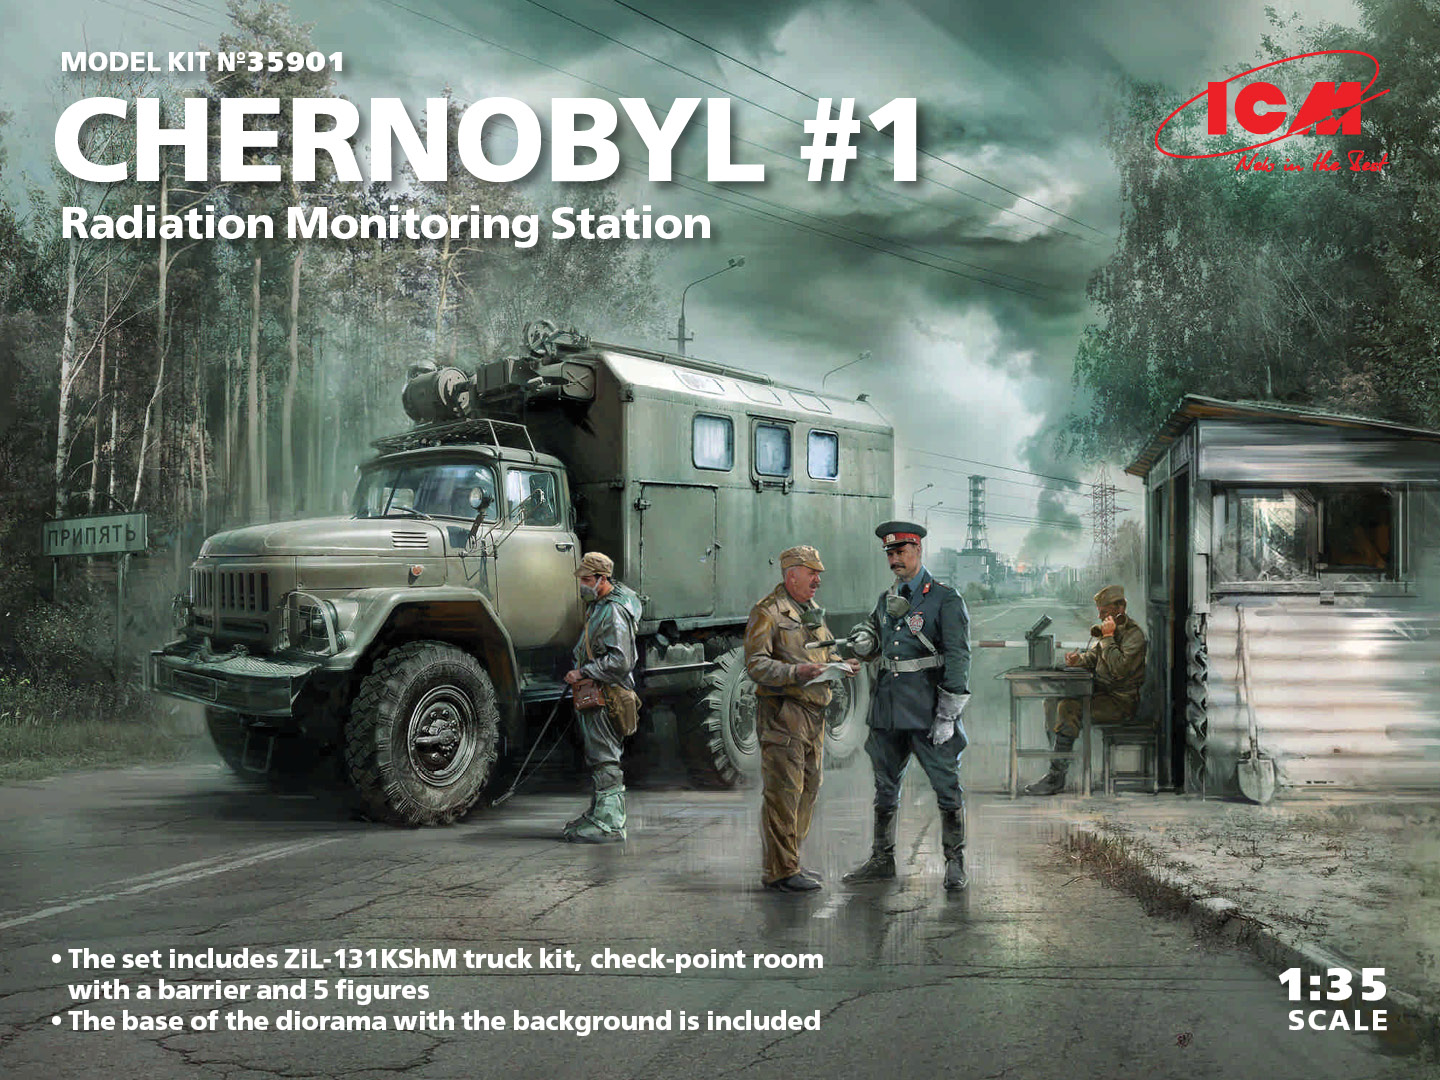 Chernobyl #1 Radiation monitoring station